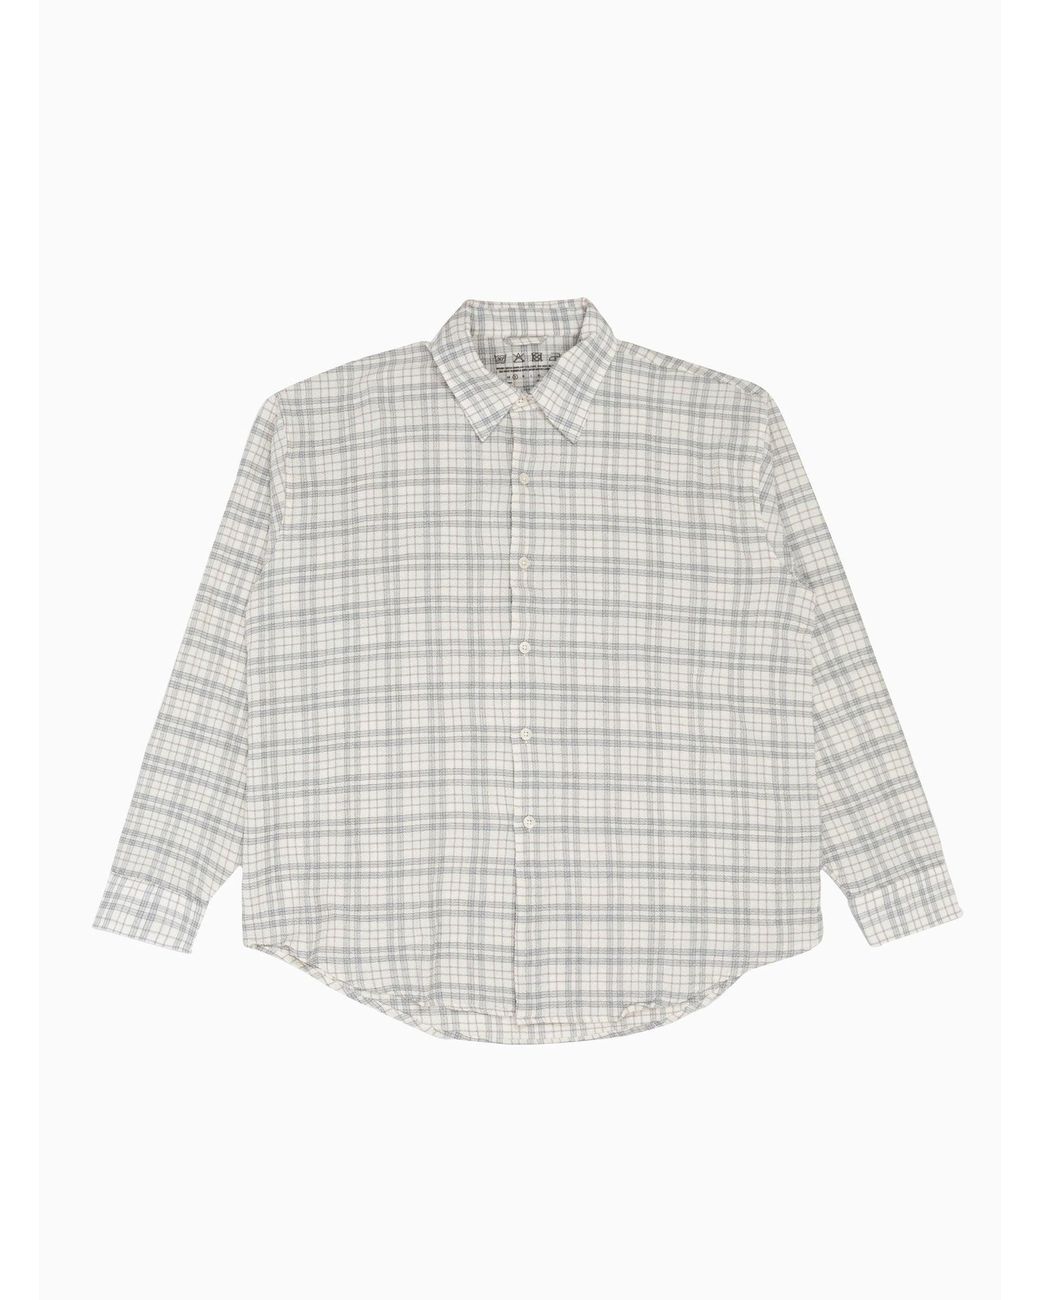 mfpen Exact Seersucker Shirt Grey Check in White for Men | Lyst